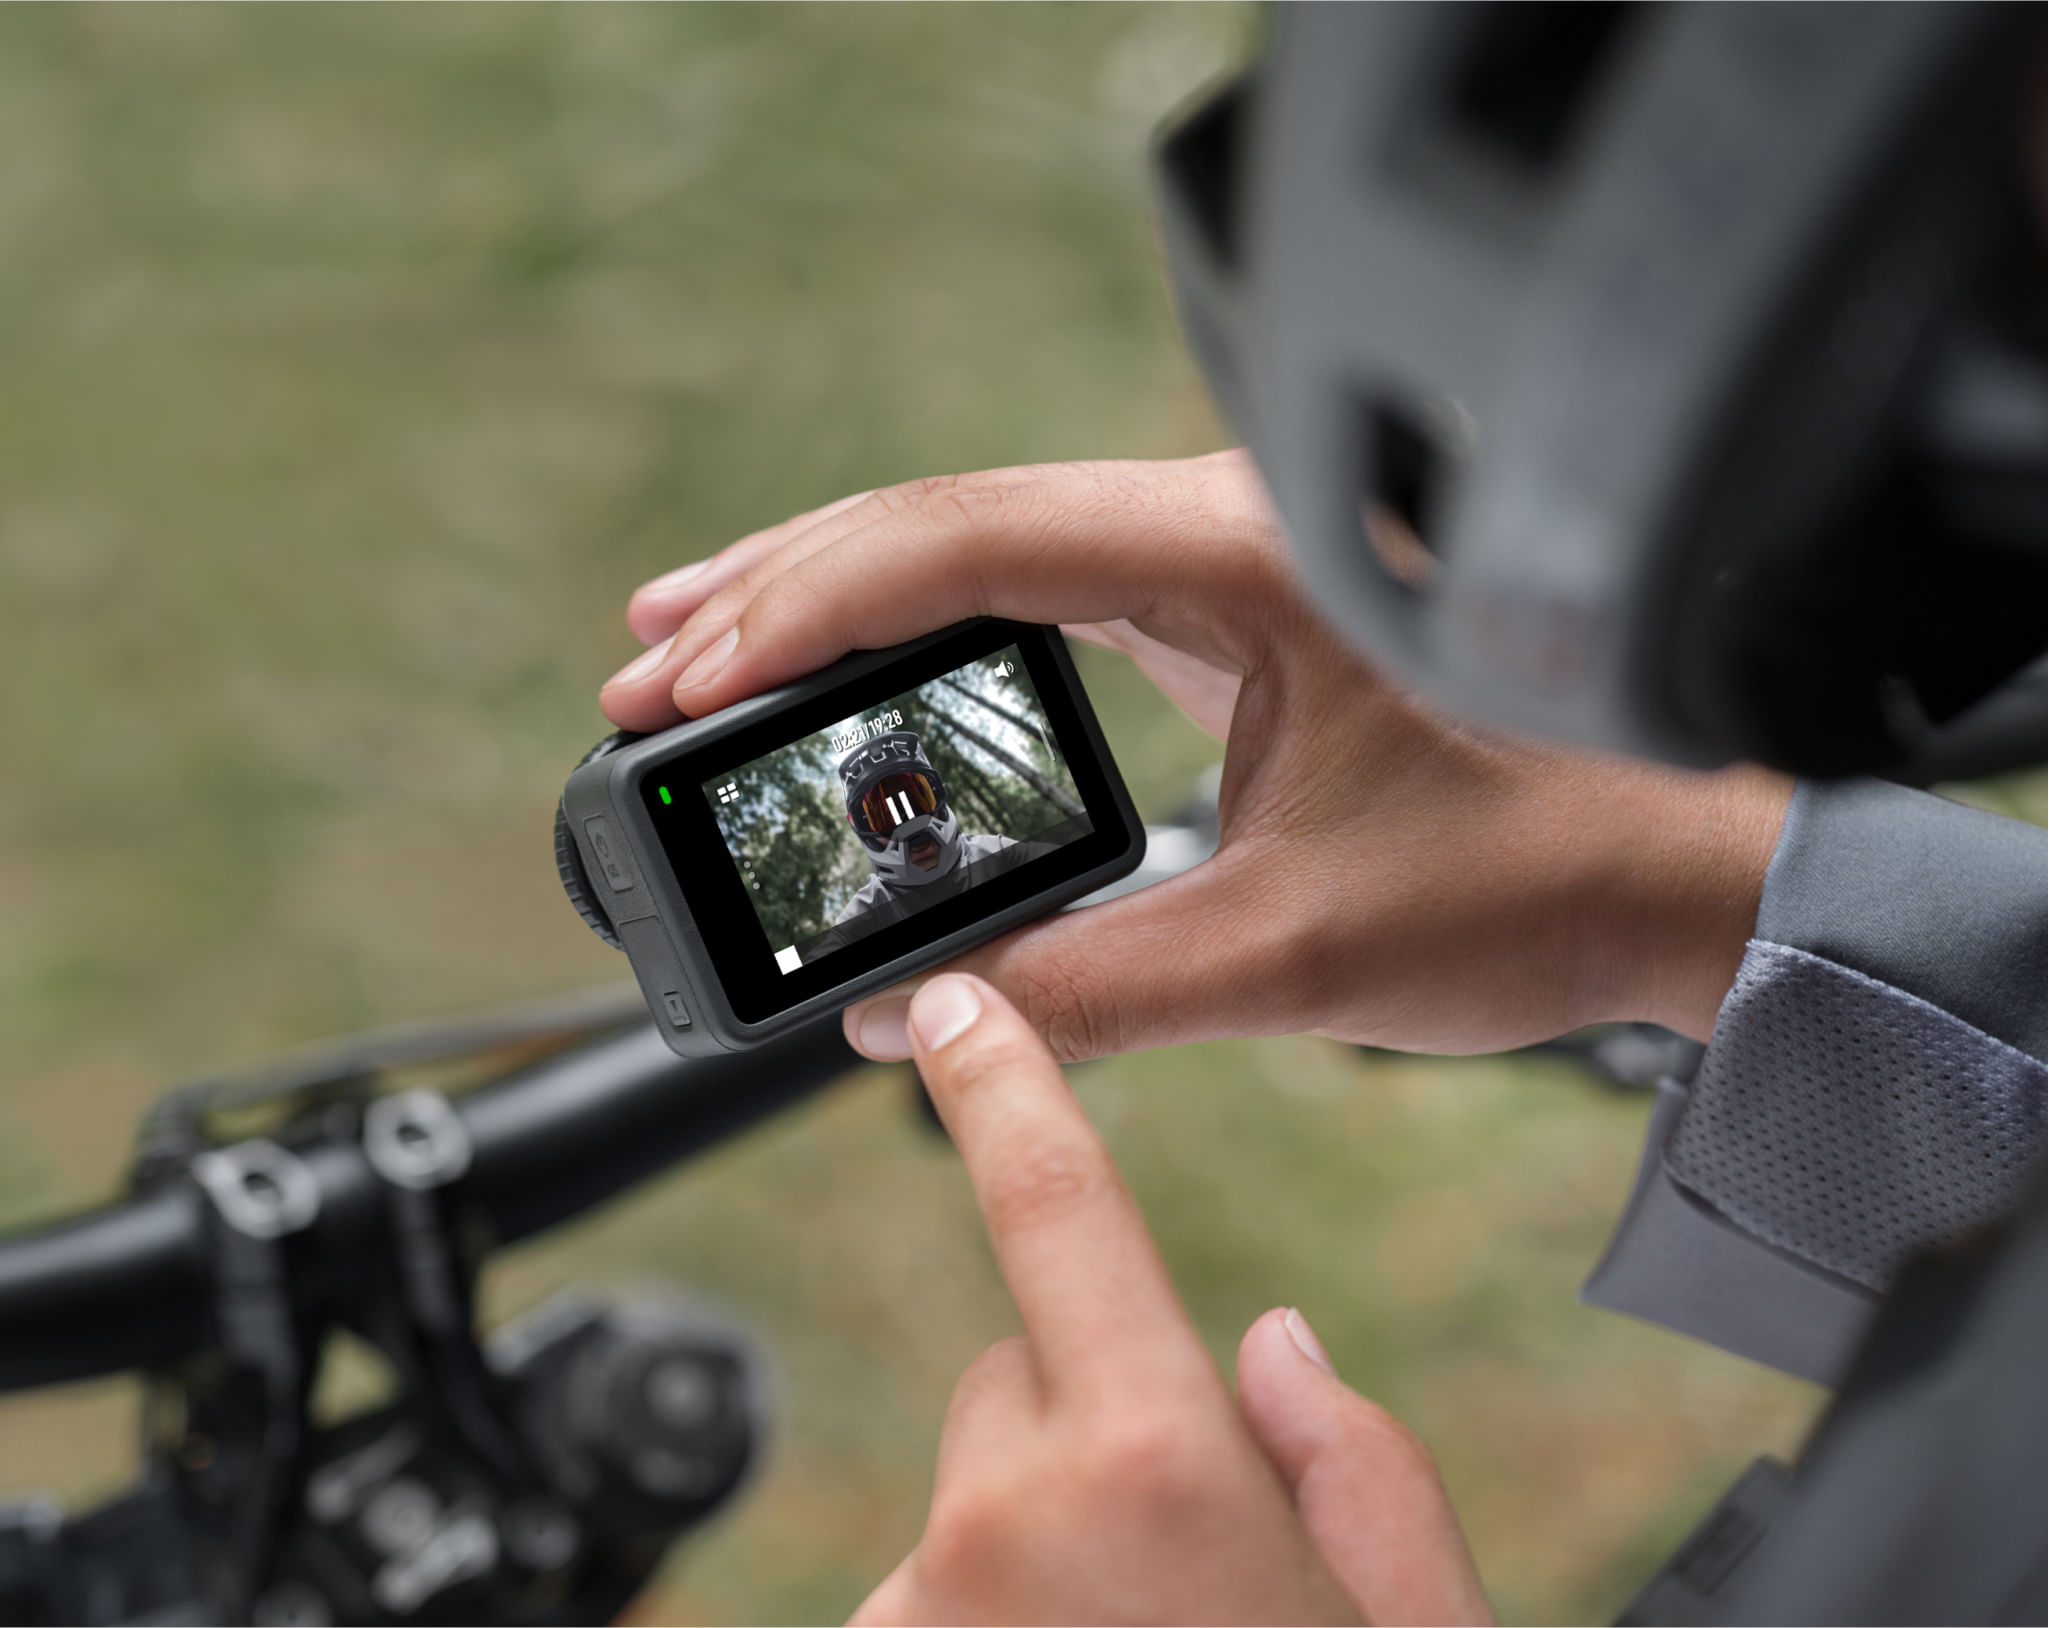 Foto de ciclista interagindo com a tela sensível ao toque do aparelho